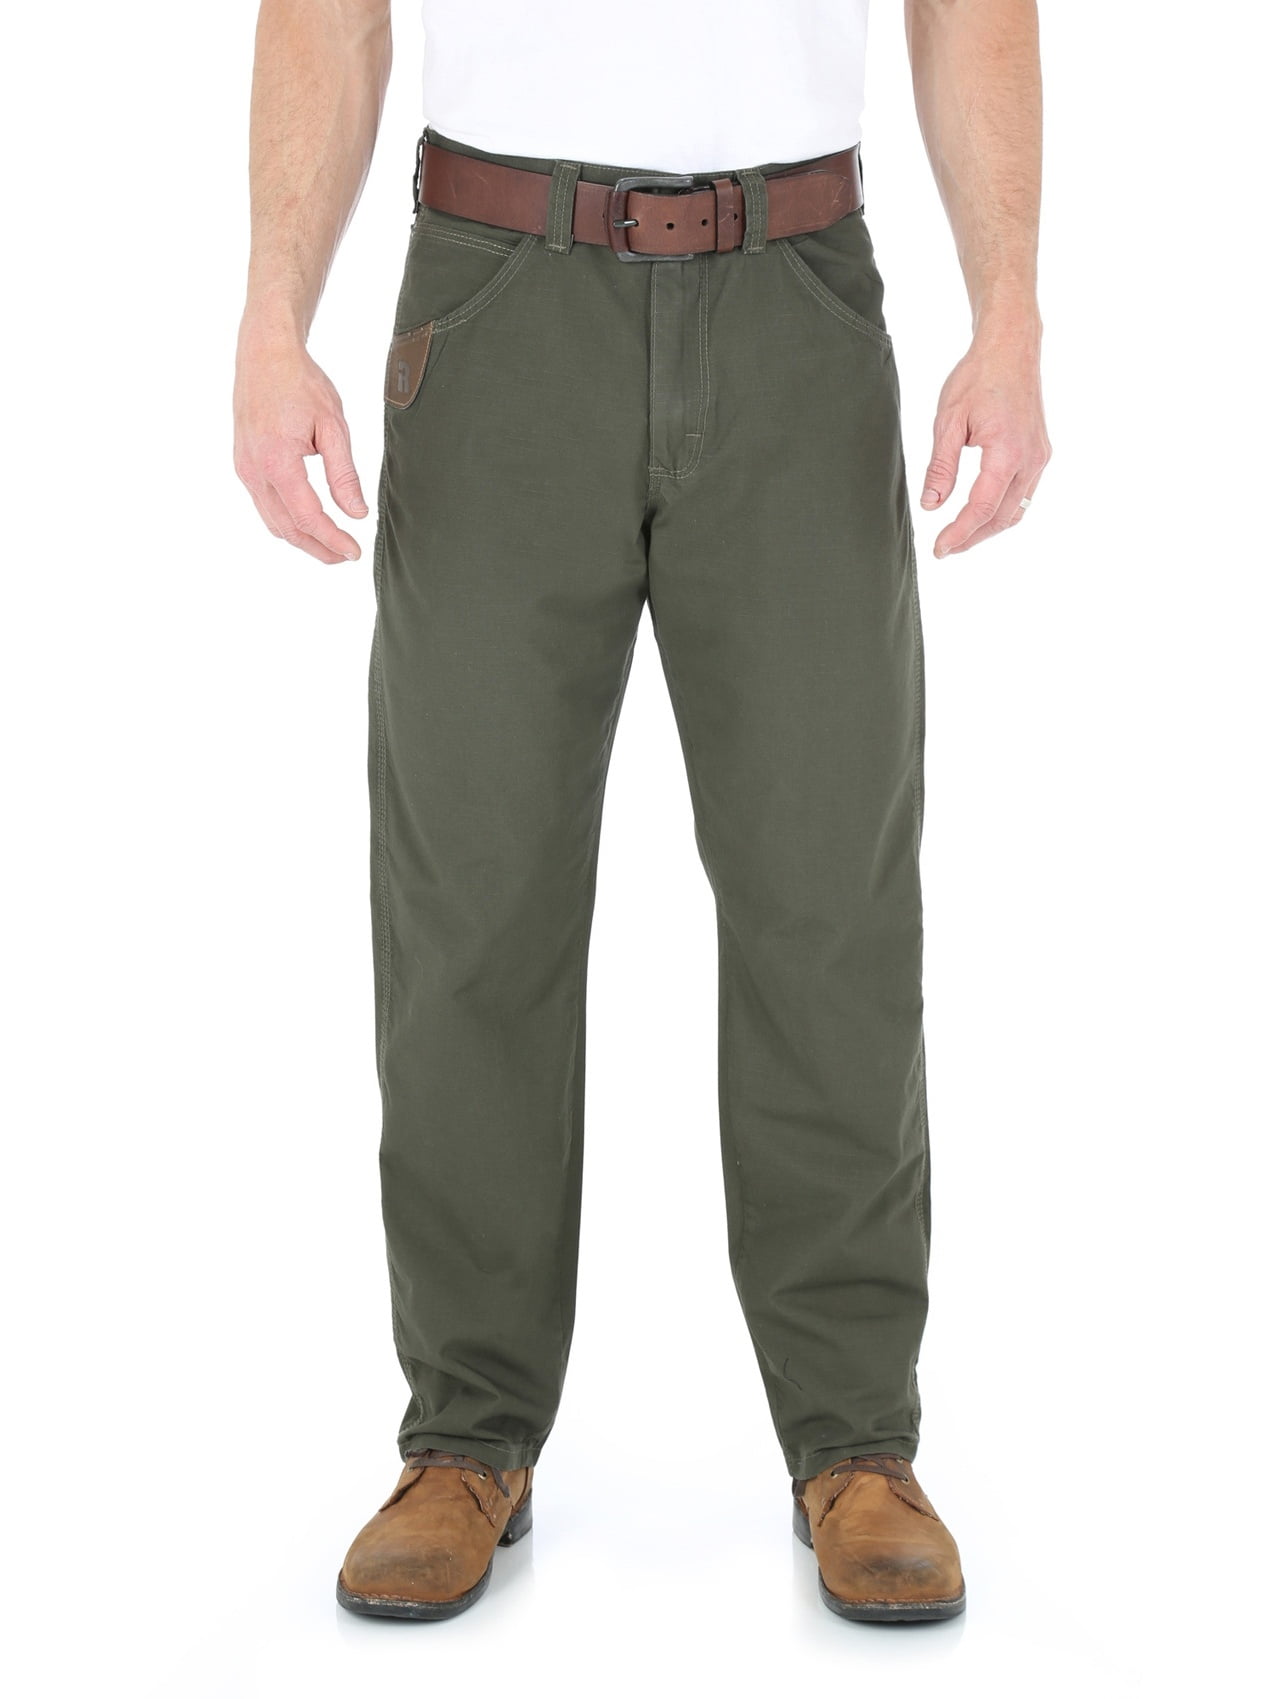 wrangler riggs workwear men's technician pants, loden, w33 l30 